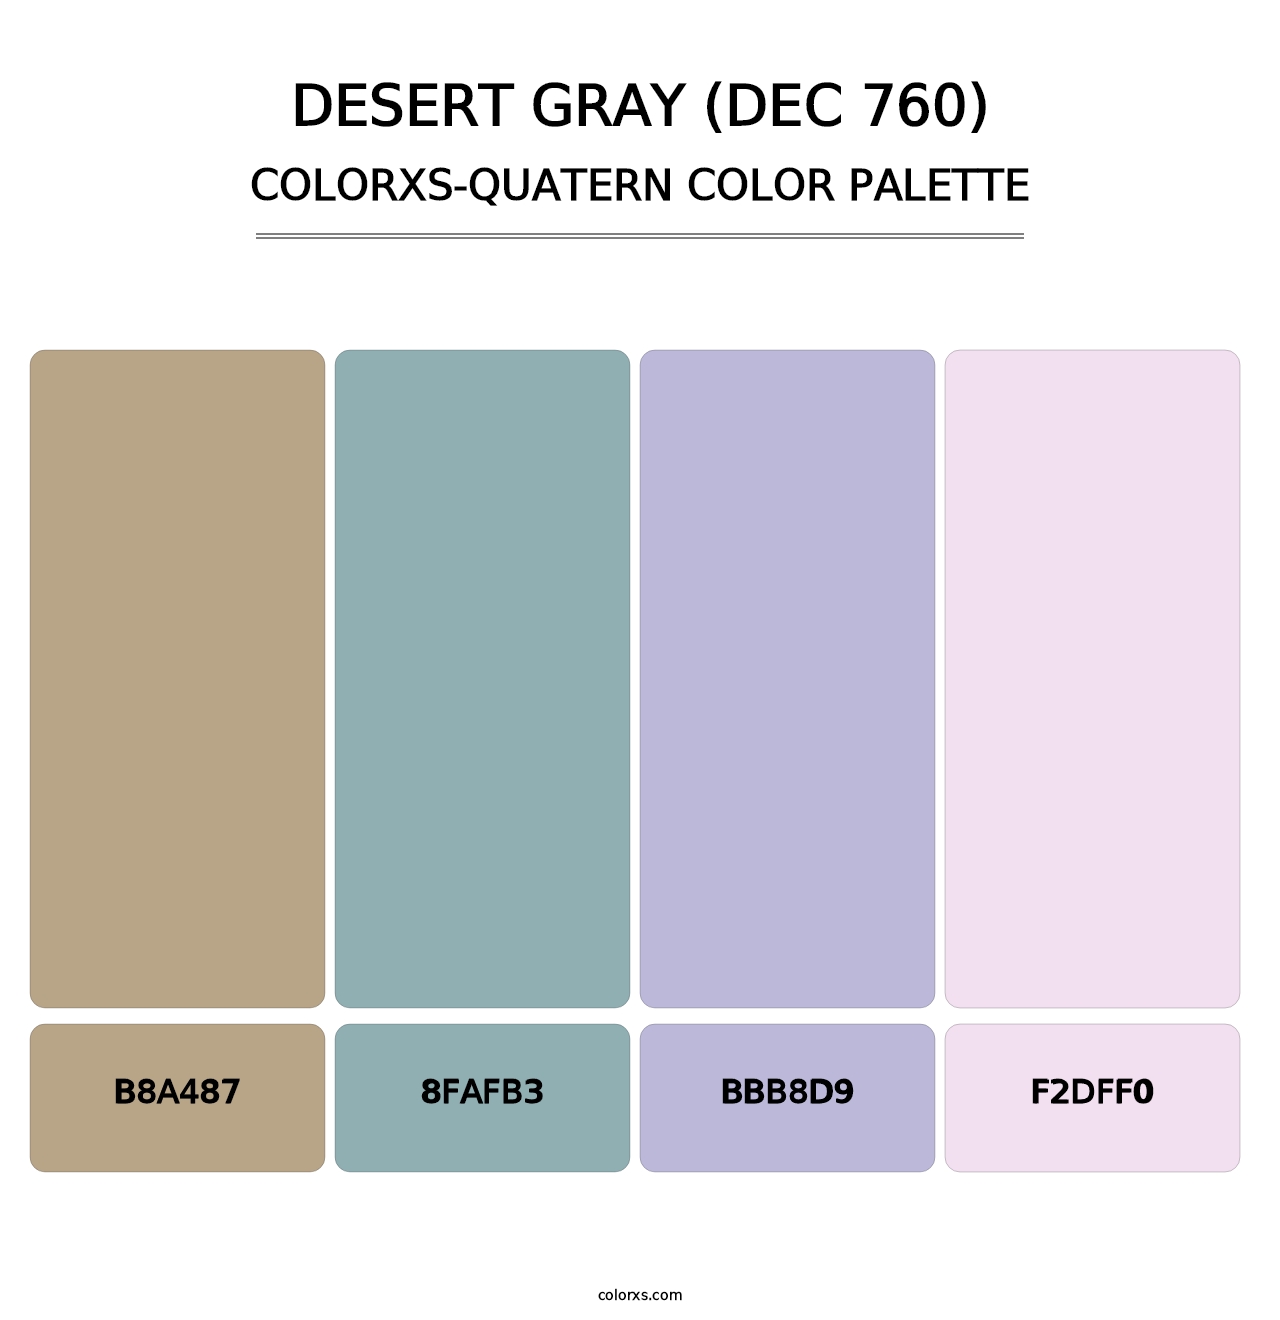 Desert Gray (DEC 760) - Colorxs Quatern Palette